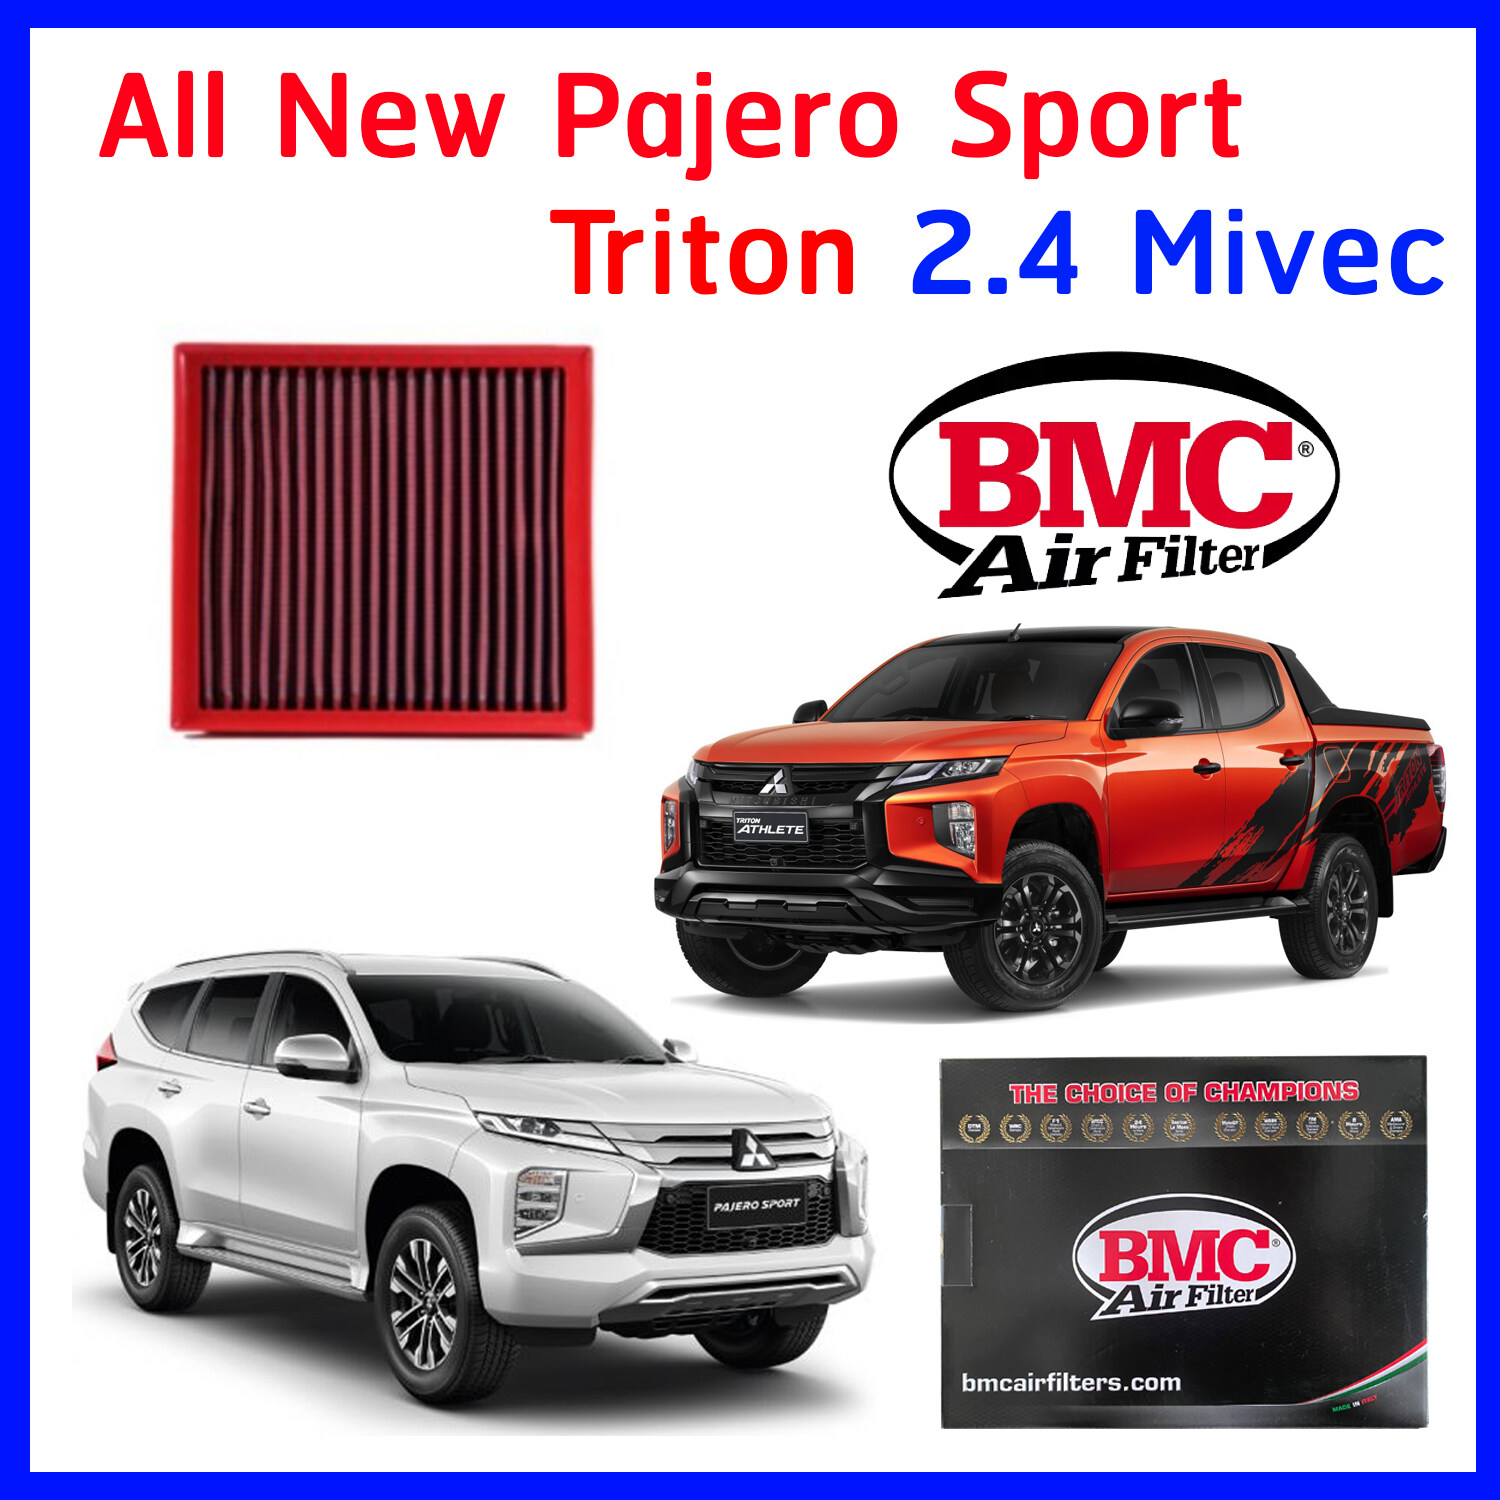 กรองอากาศ BMC Air filter Mitsubishi All New Pajero Sport Triton 2.4 แทนของเดิม Made in Italy แท้ มิทซูบิชิ ออลนิว ปาเจโร่ สปอท ไทรทัน